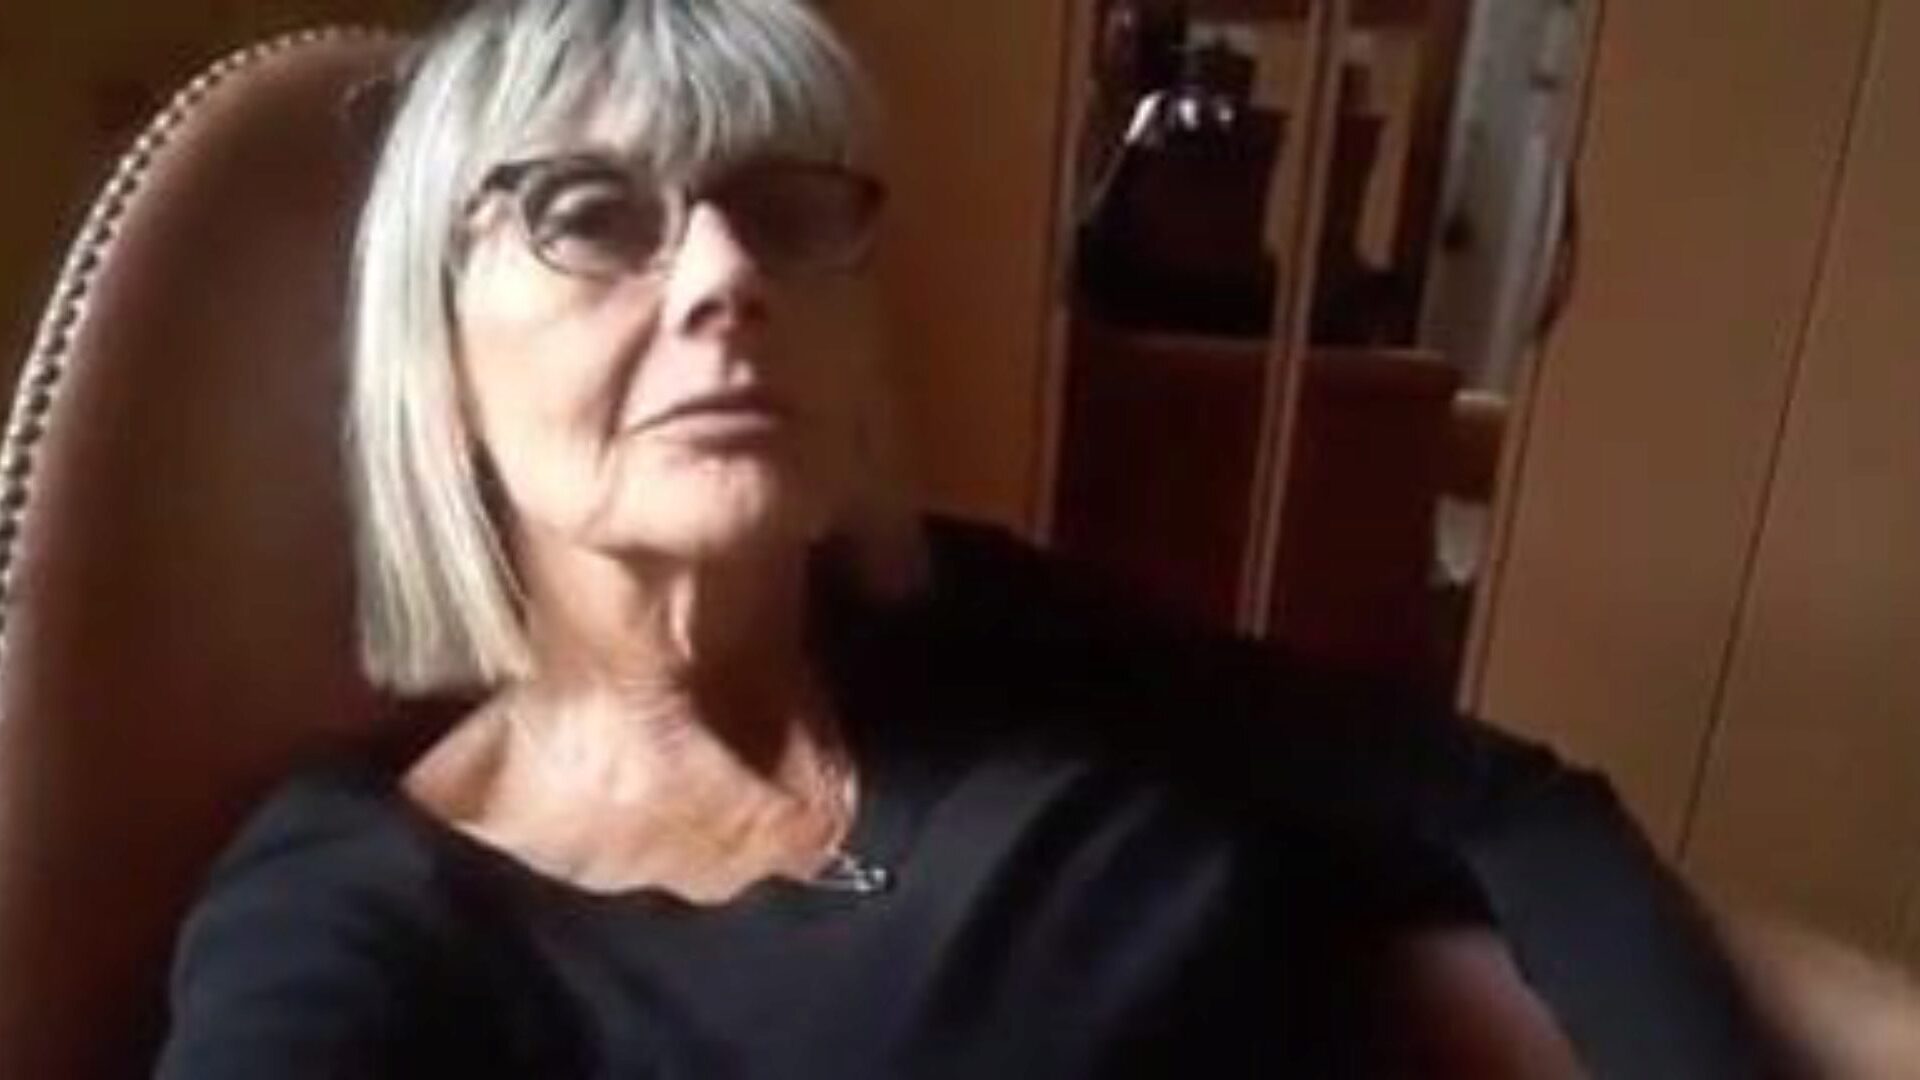 bestemor onani: bestemor dvd porno video 41 - xhamster se bestemor onani tube fuck-a-thon episode gratis på xhamster, med den utrolige mengden fransk bestemor dvd og rødt rør xxx porno videoopptredener